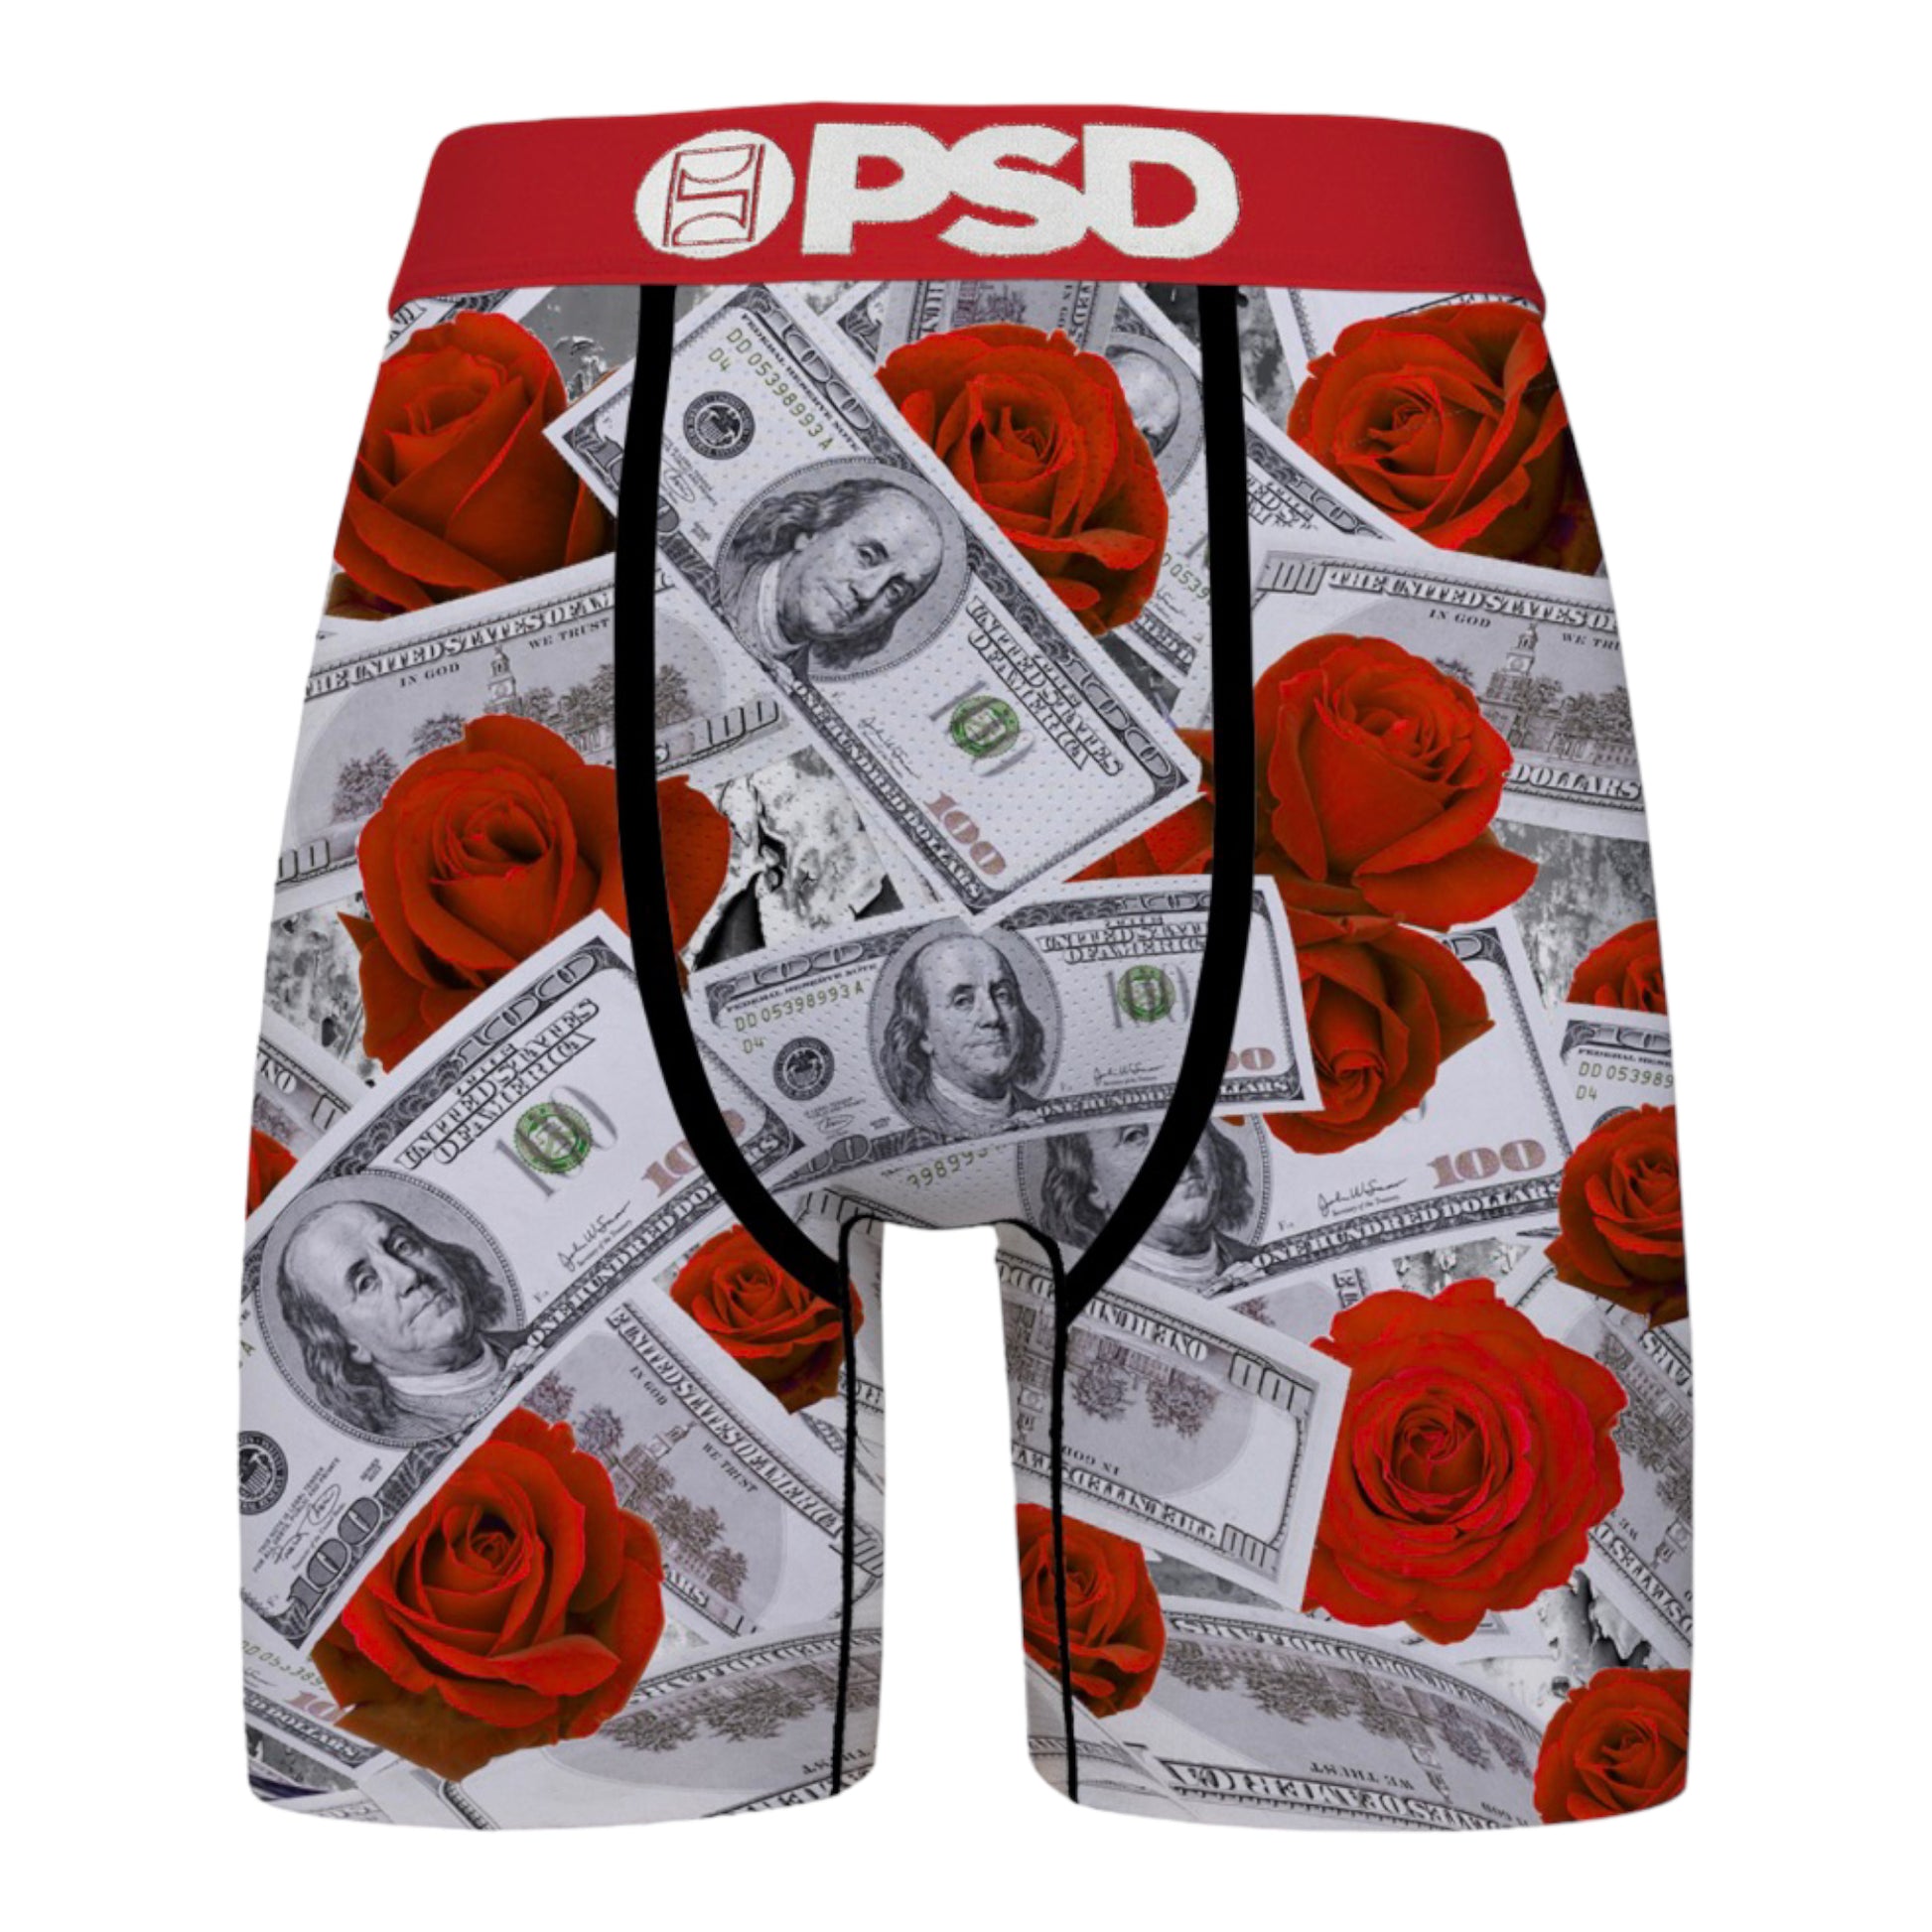 PSD Underwear 423180012